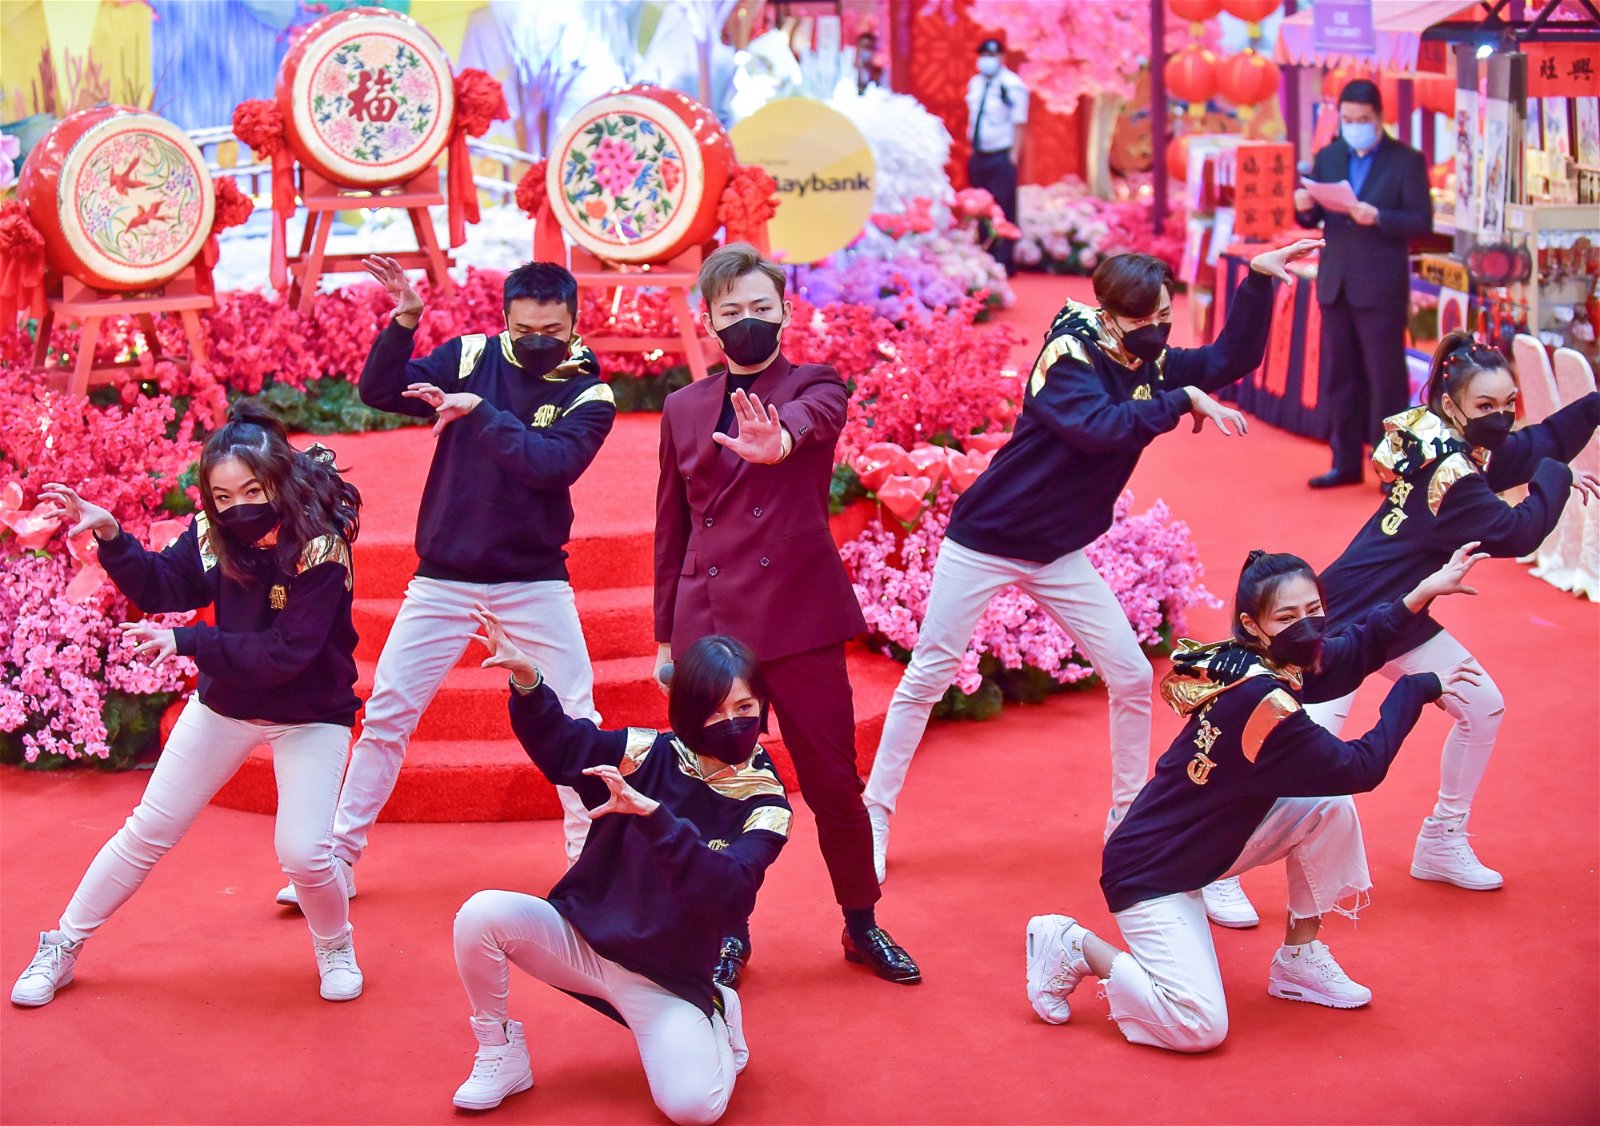 陈浩廷在柏威年广场举办新春首唱会。